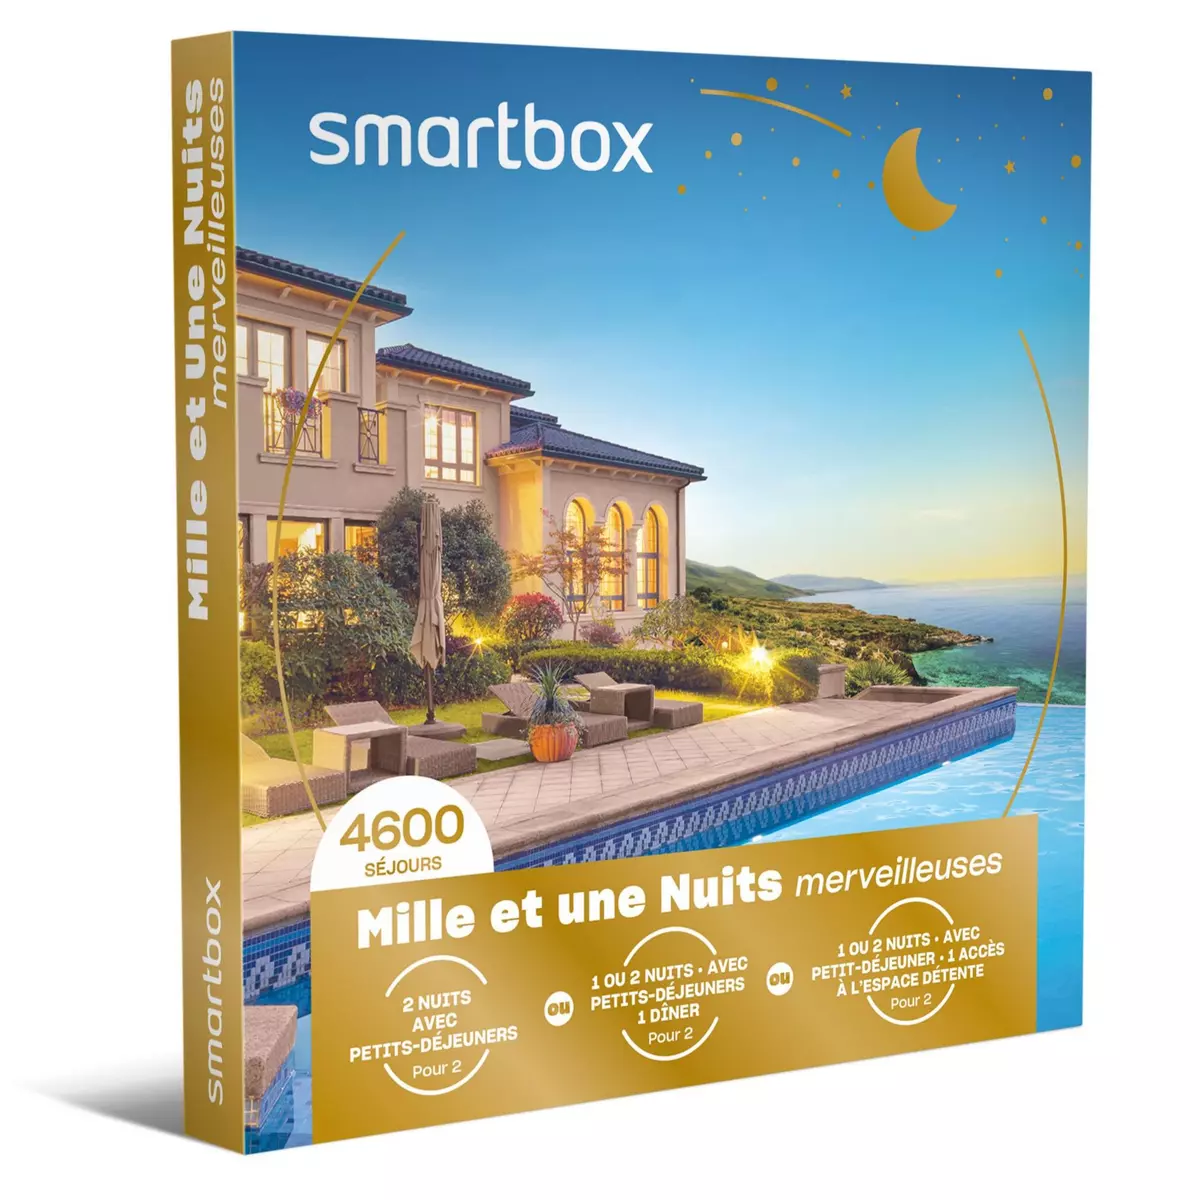 Smartbox Mille et une nuits merveilleuses - Coffret Cadeau Séjour